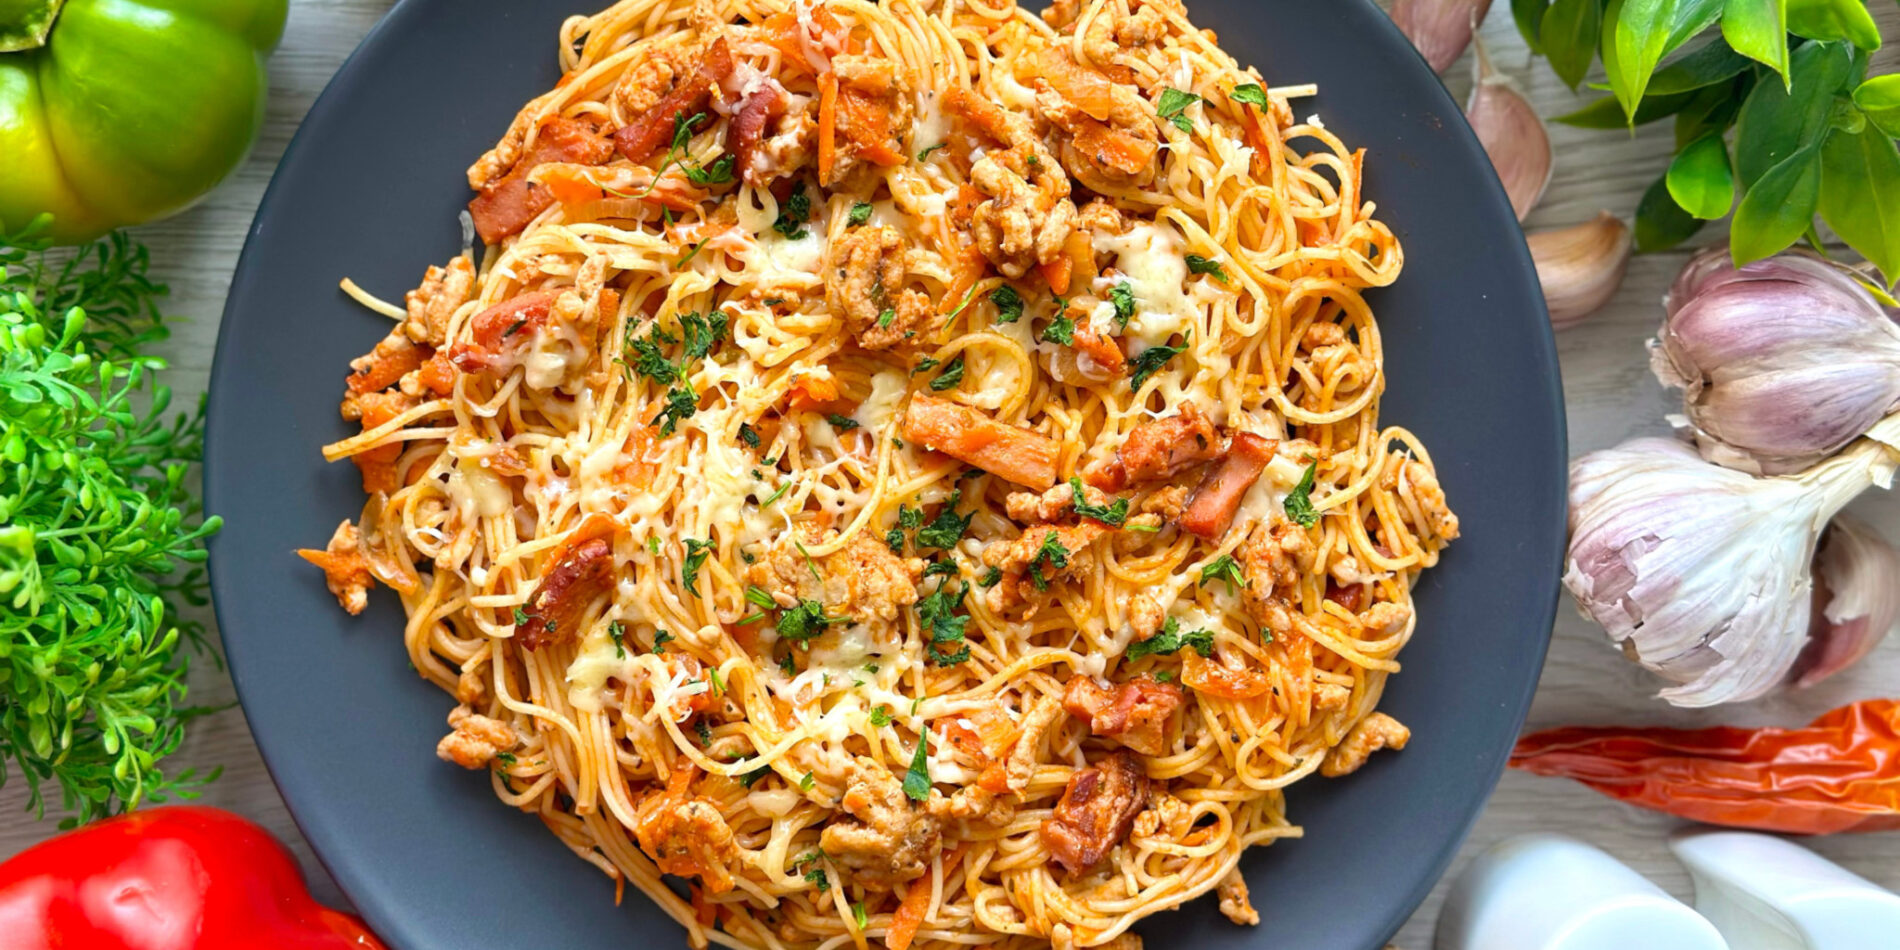 Pikantne spaghetti z mięsem - propozycja przygotowania